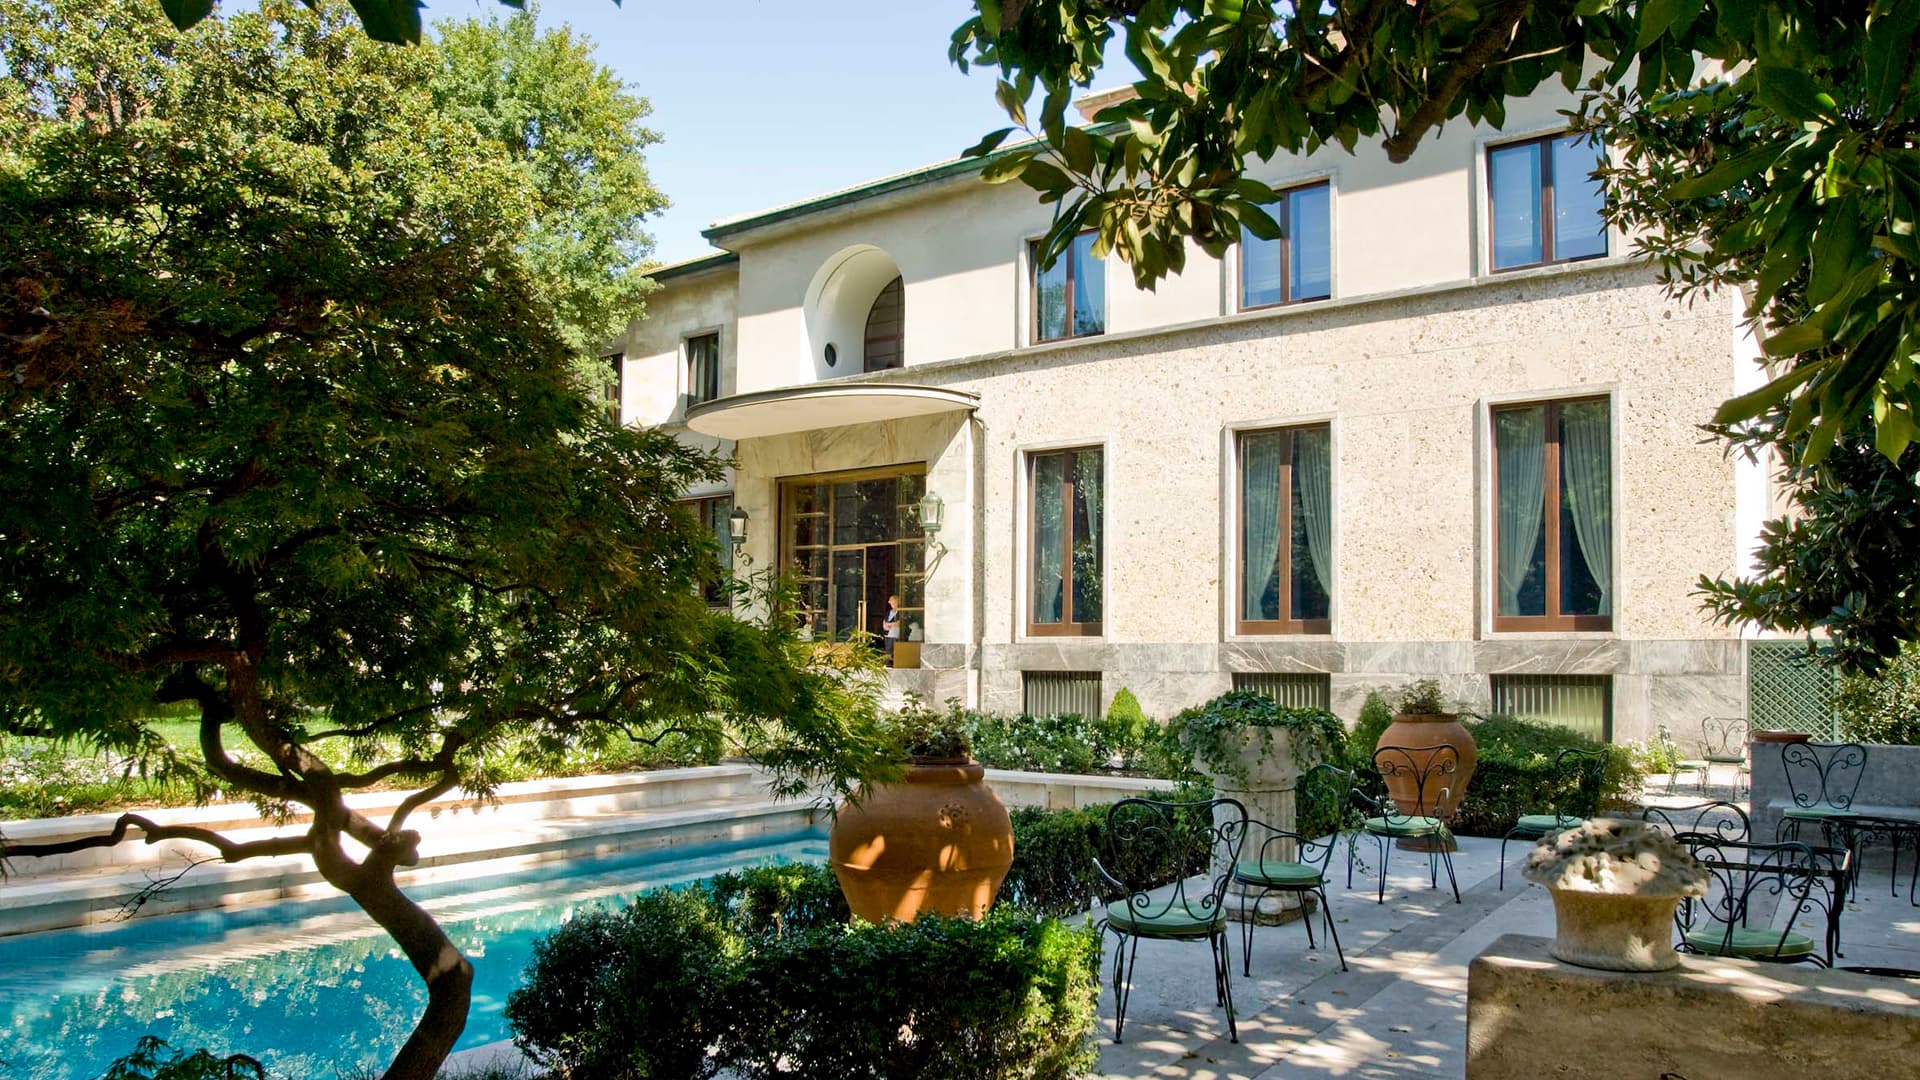 Villa Necchi Campiglio: оазис в центре города и самая фотогеничная локация Милана